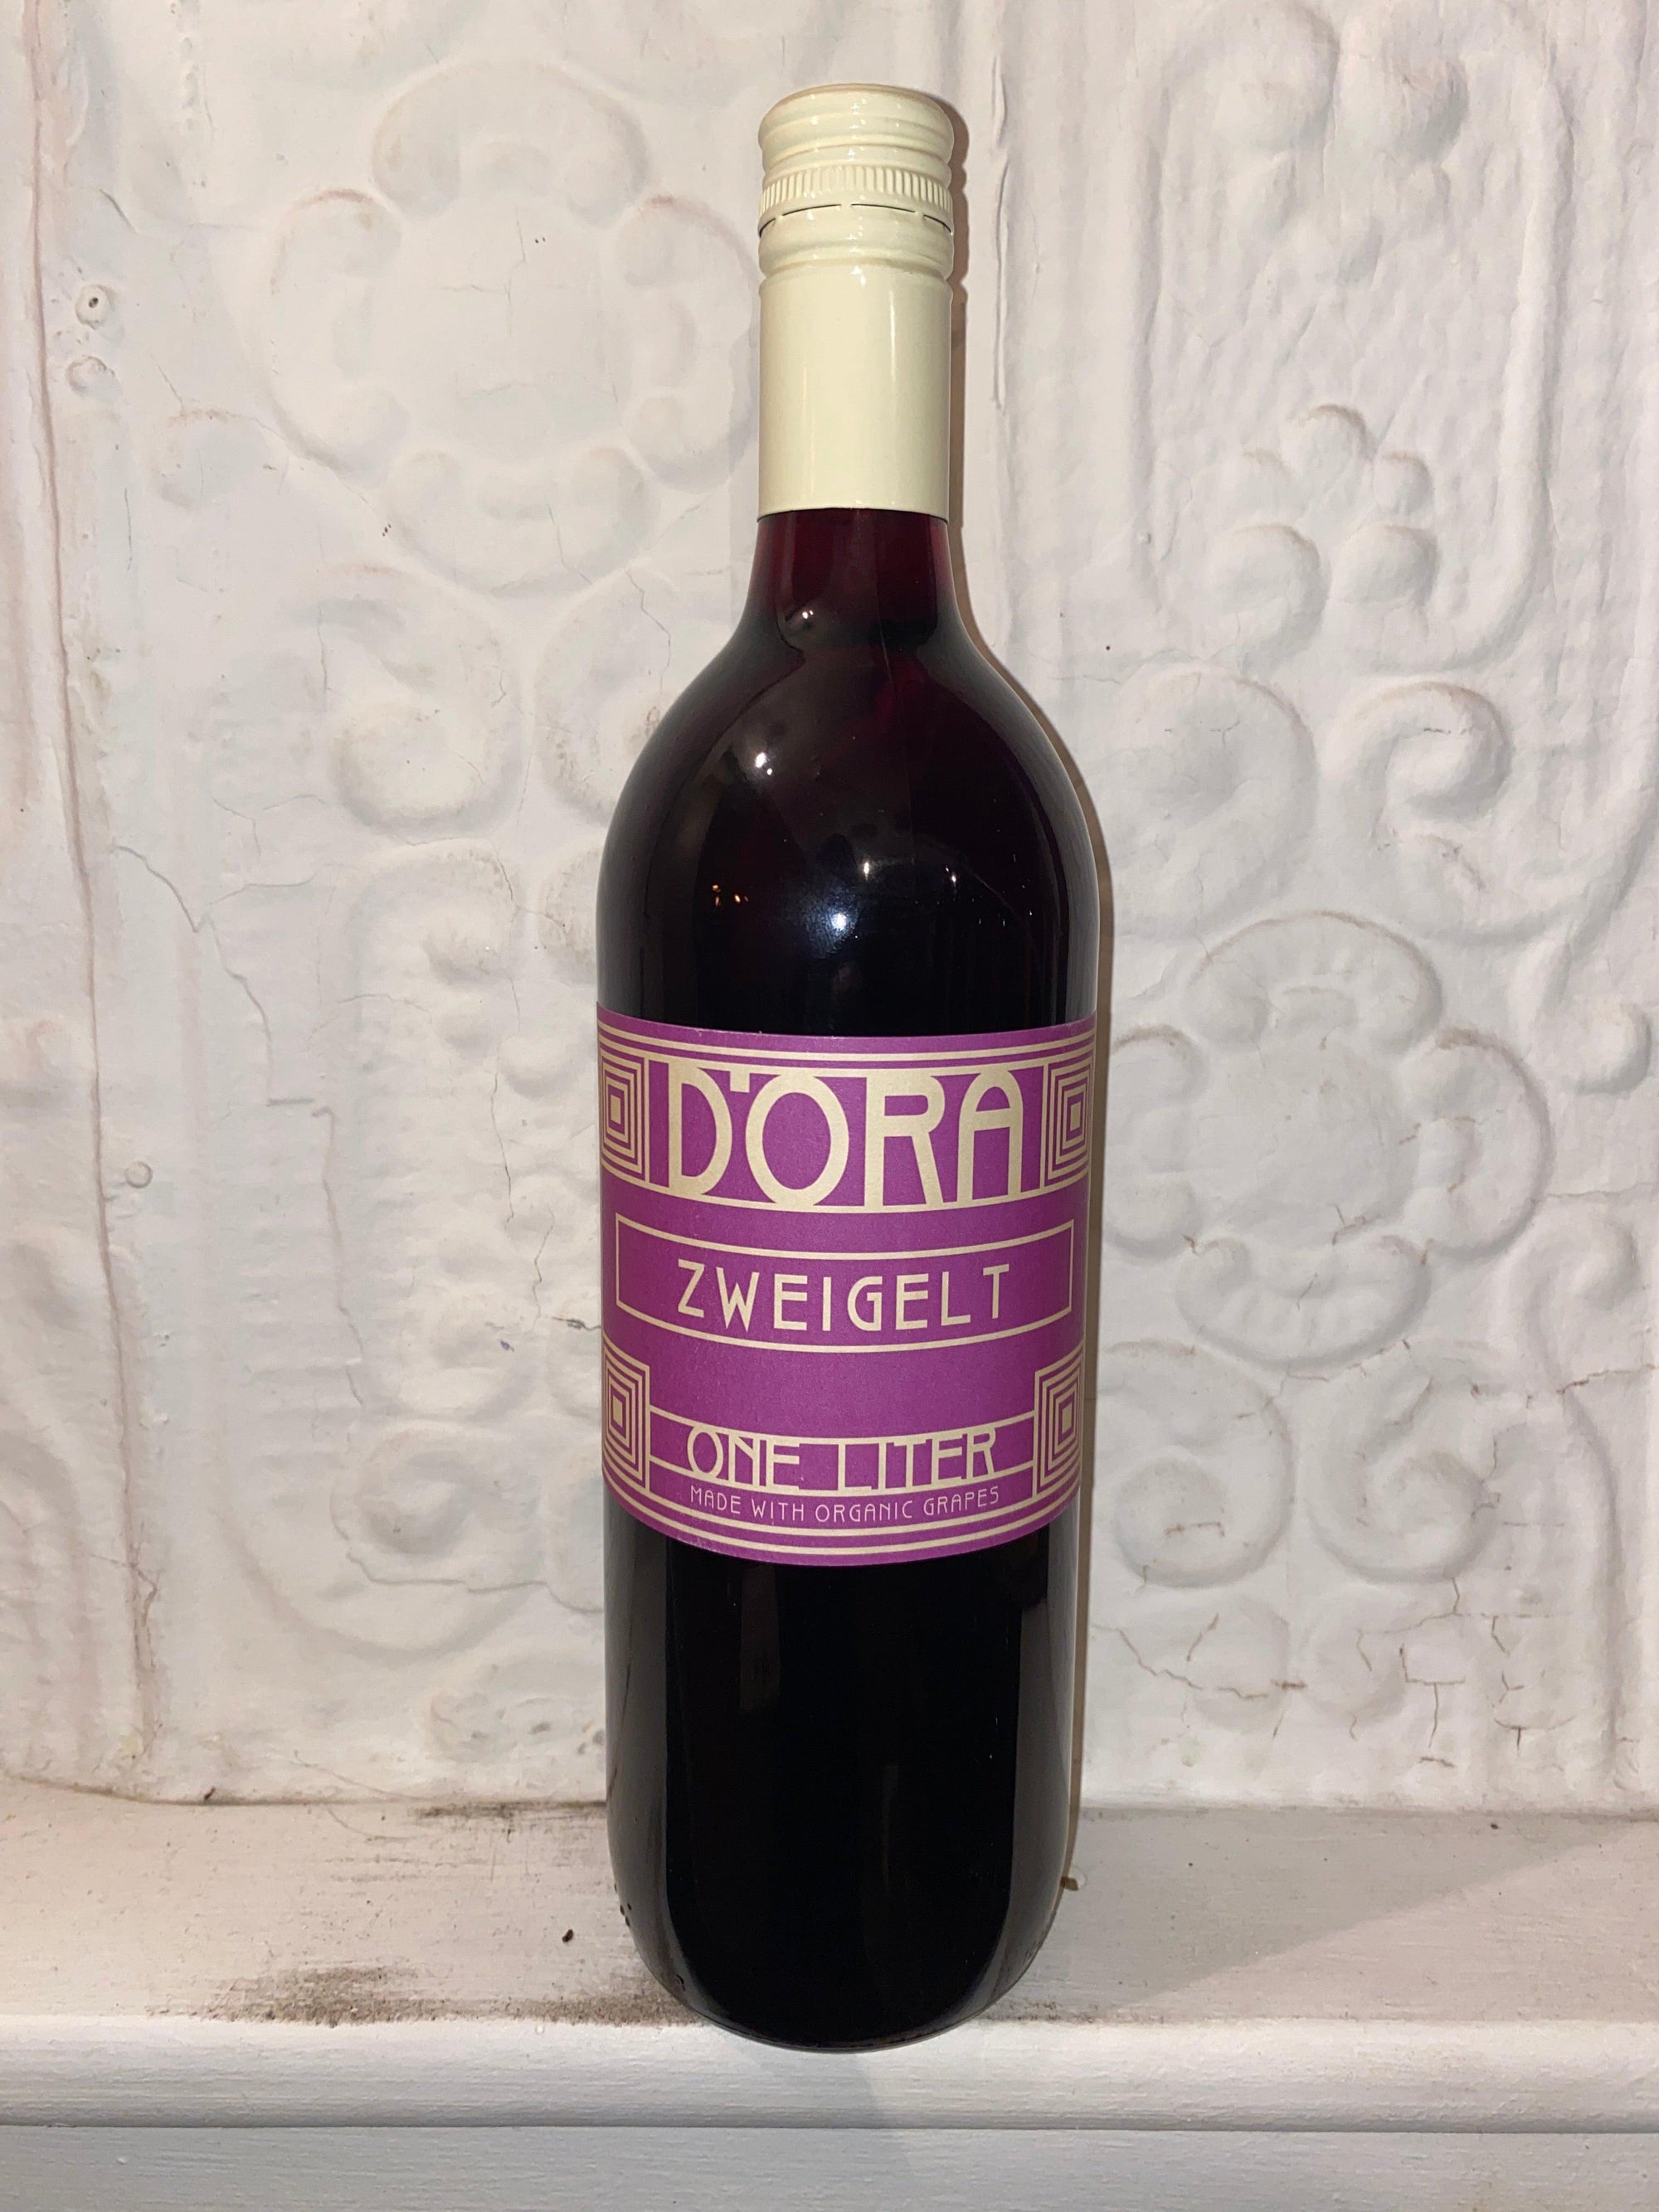 Zweigelt, Dora Ltr 2021 (Osterreich, Austria)-Wine-Bibber & Bell